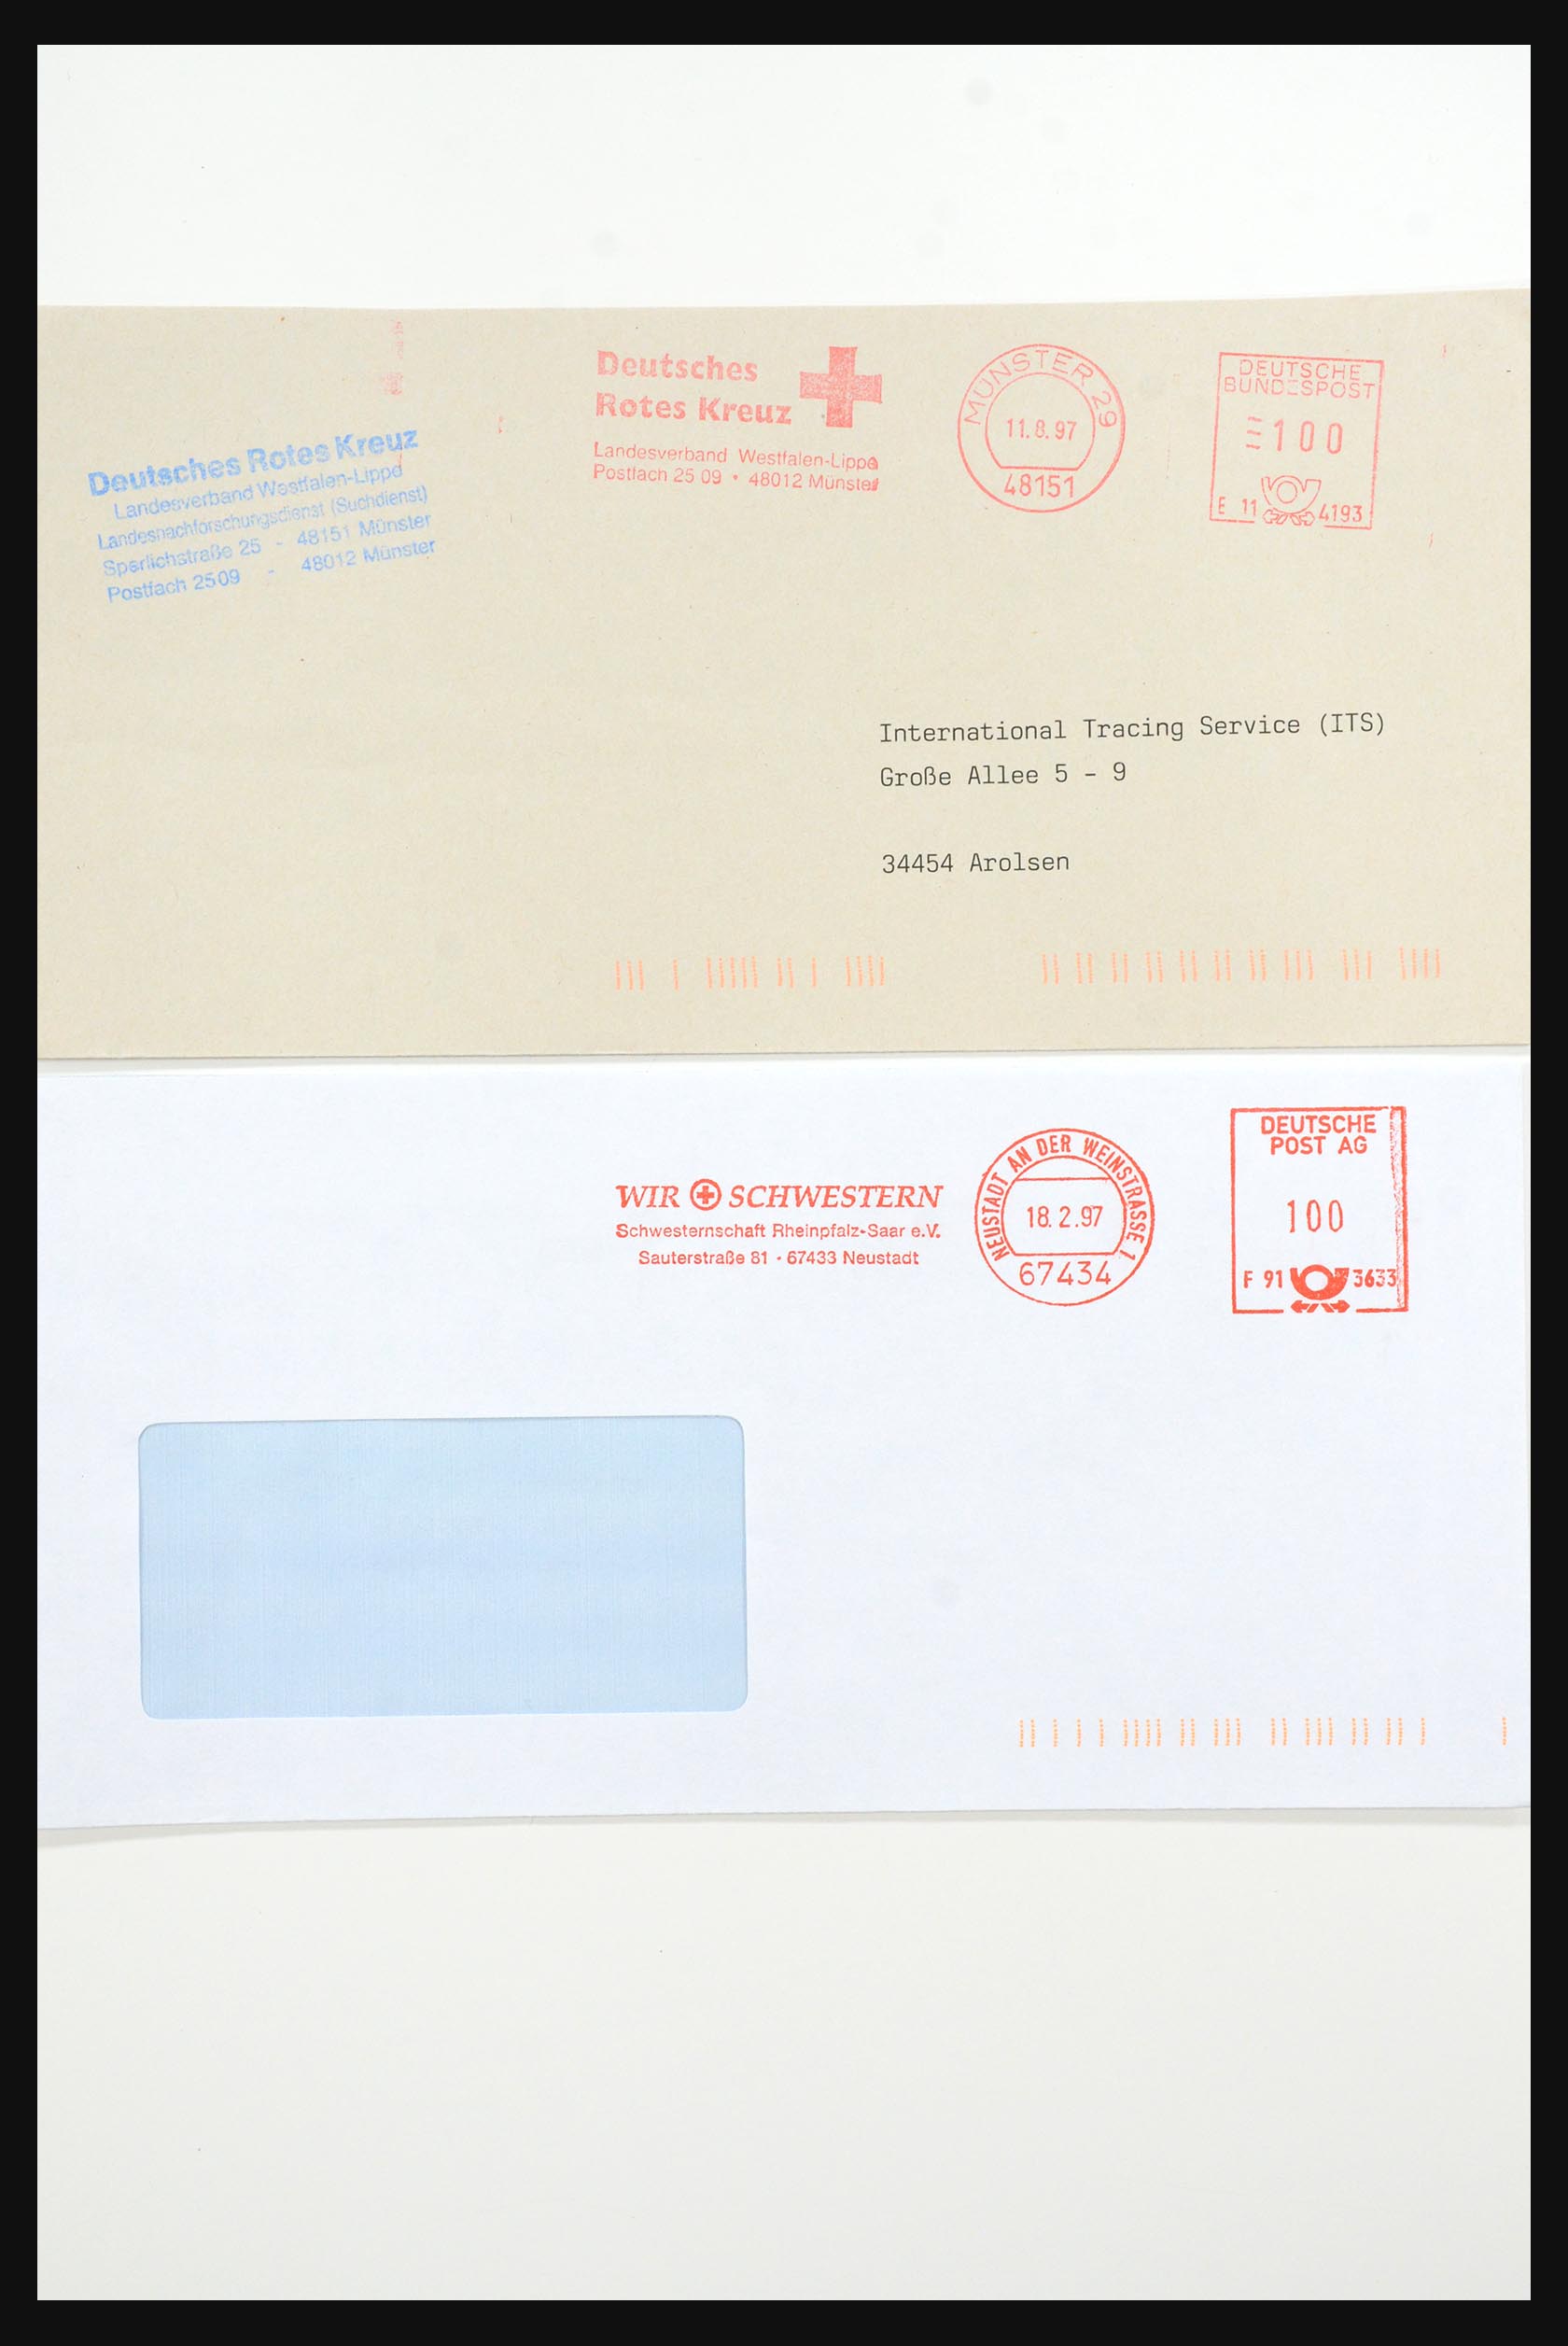 31365 1071 - 31365 Rode kruis brieven 1905-1975.